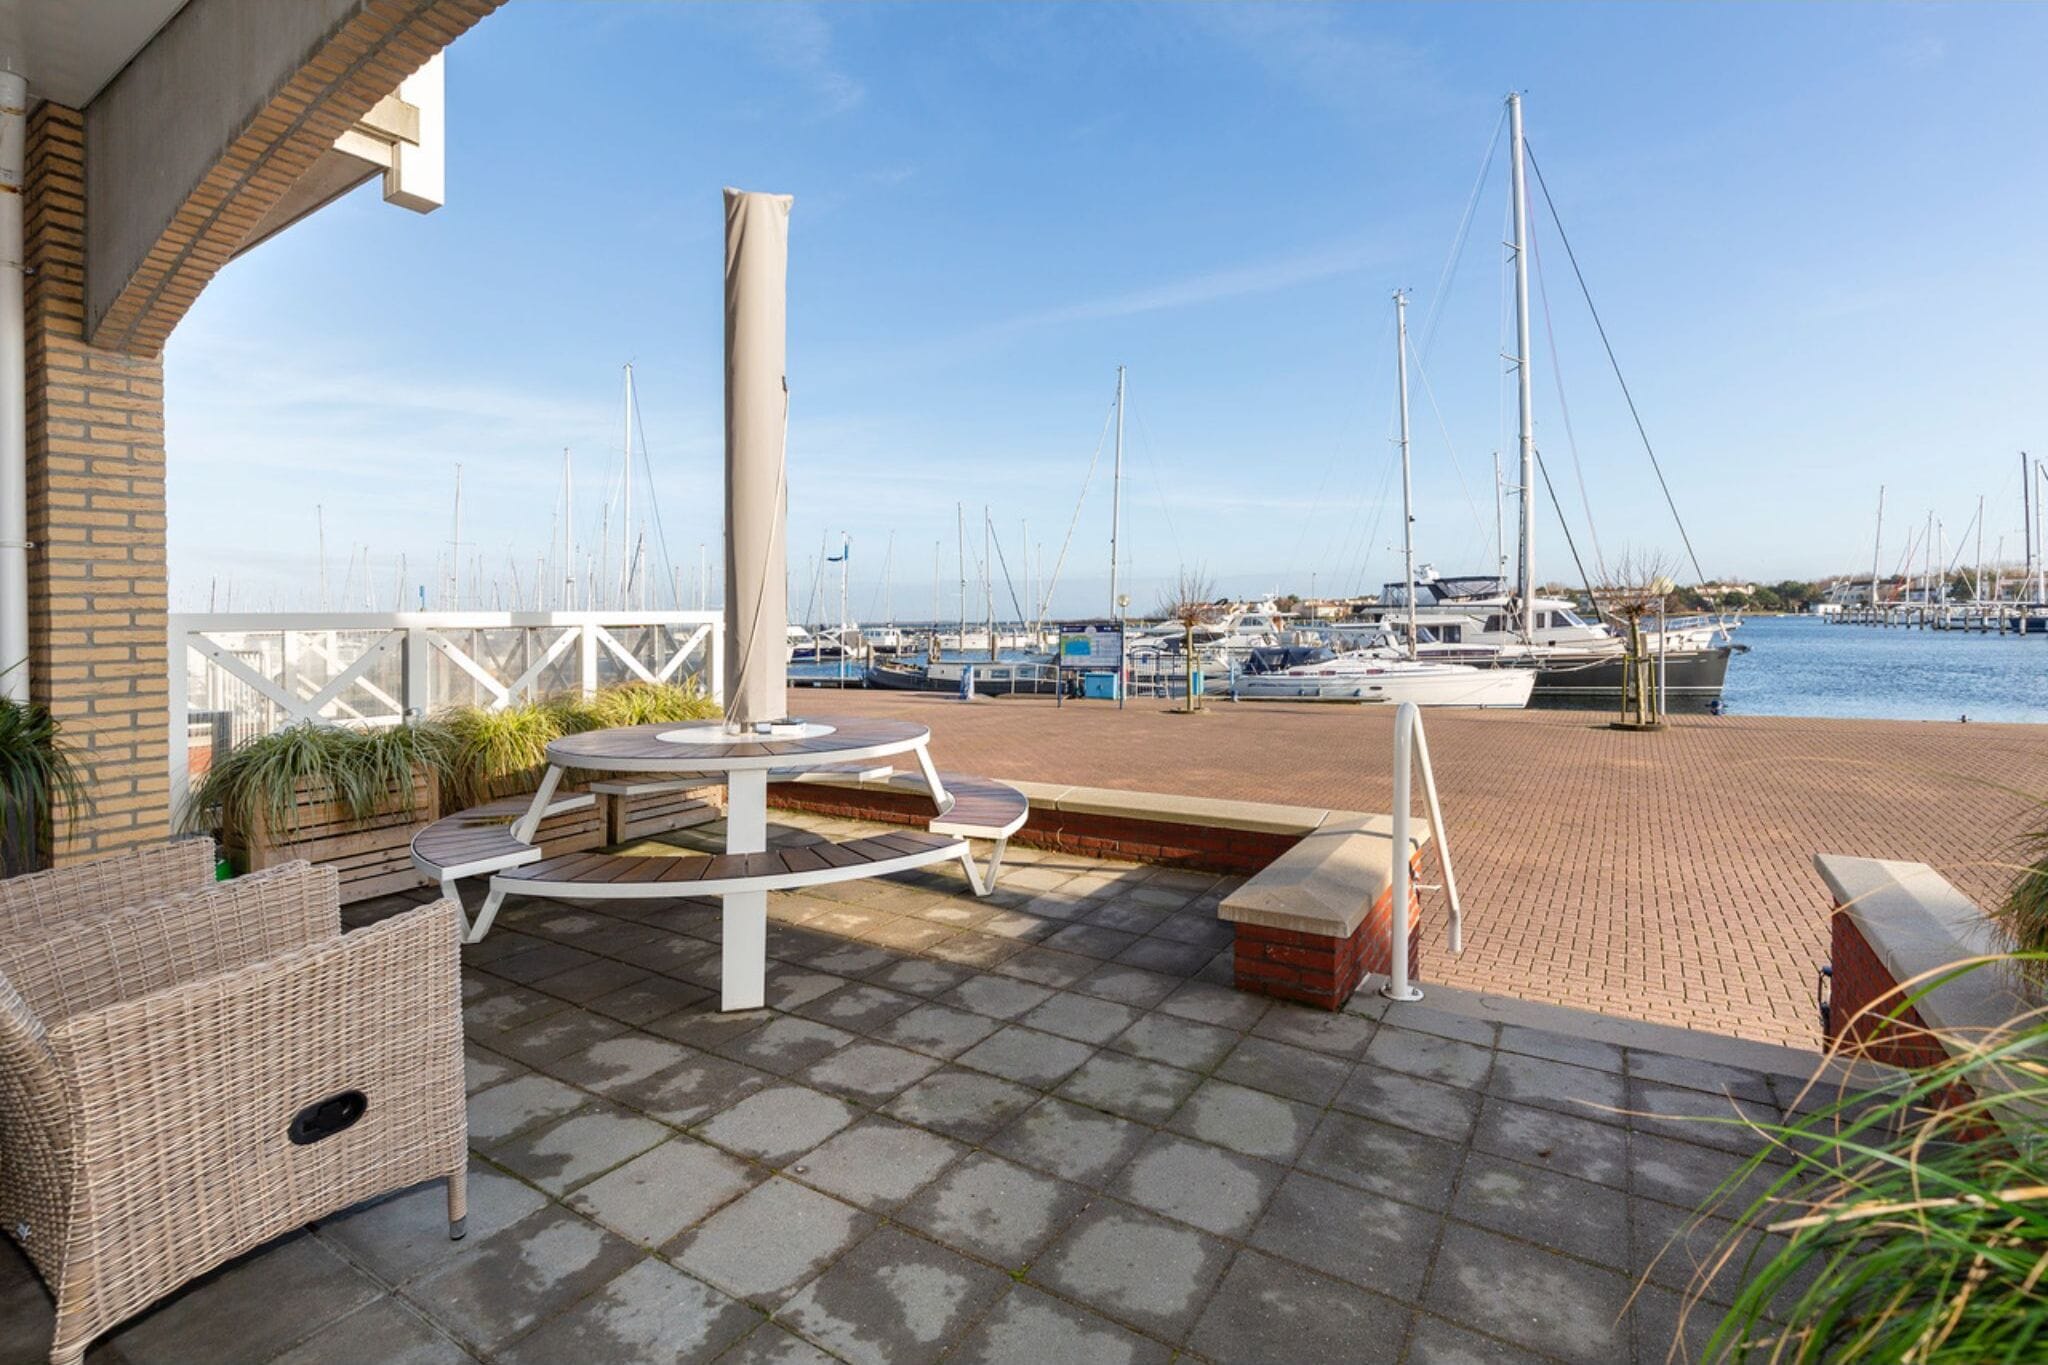 Ruim luxe opgezet appartement met prachtig uitzicht op de haven en de Noordzee